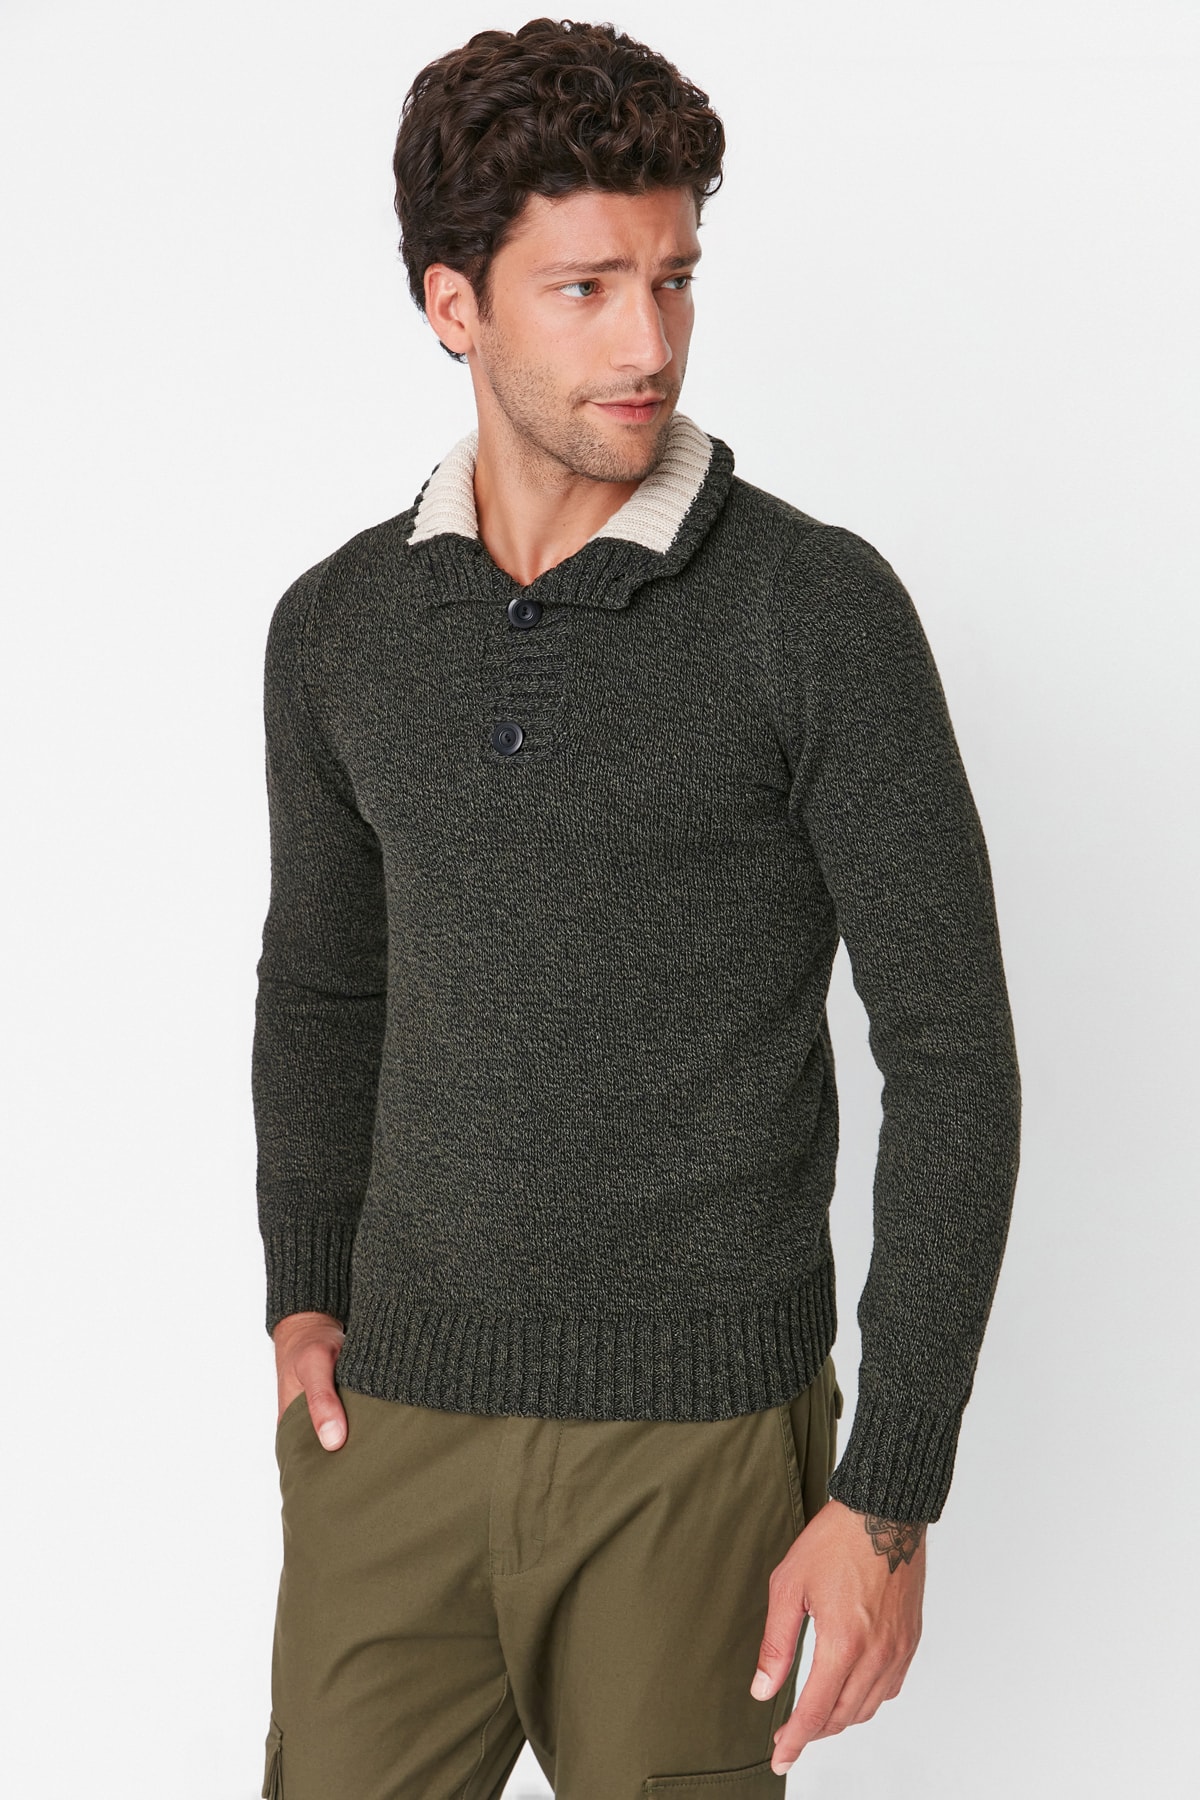 Мужской приталенный трикотажный свитер хаки на пуговицах до половины цвета рыбак Trendyol